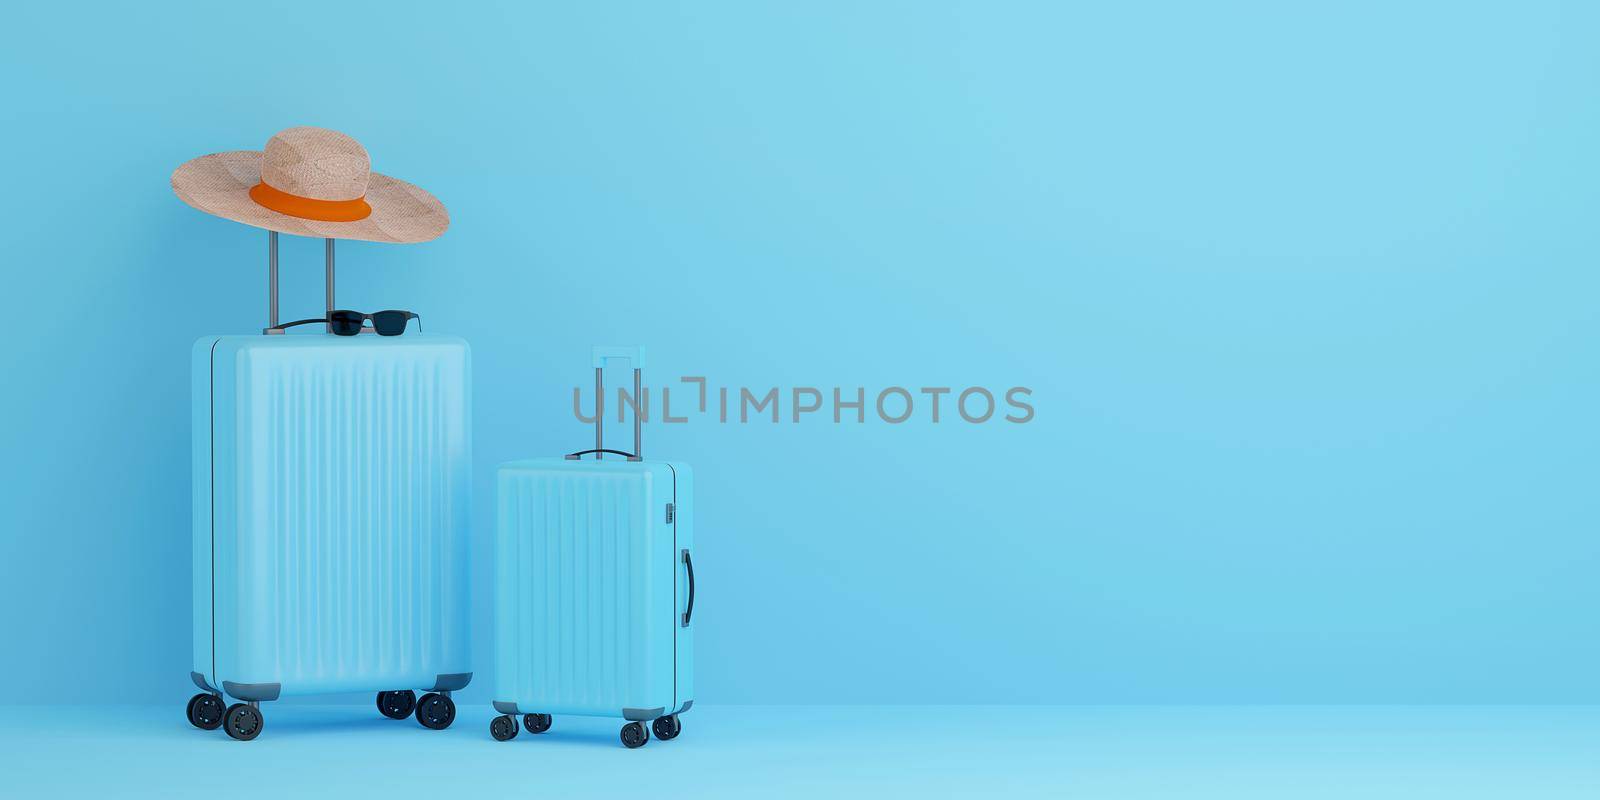 Suitcase with traveler accessories on blue background, 3d illustration by nutzchotwarut